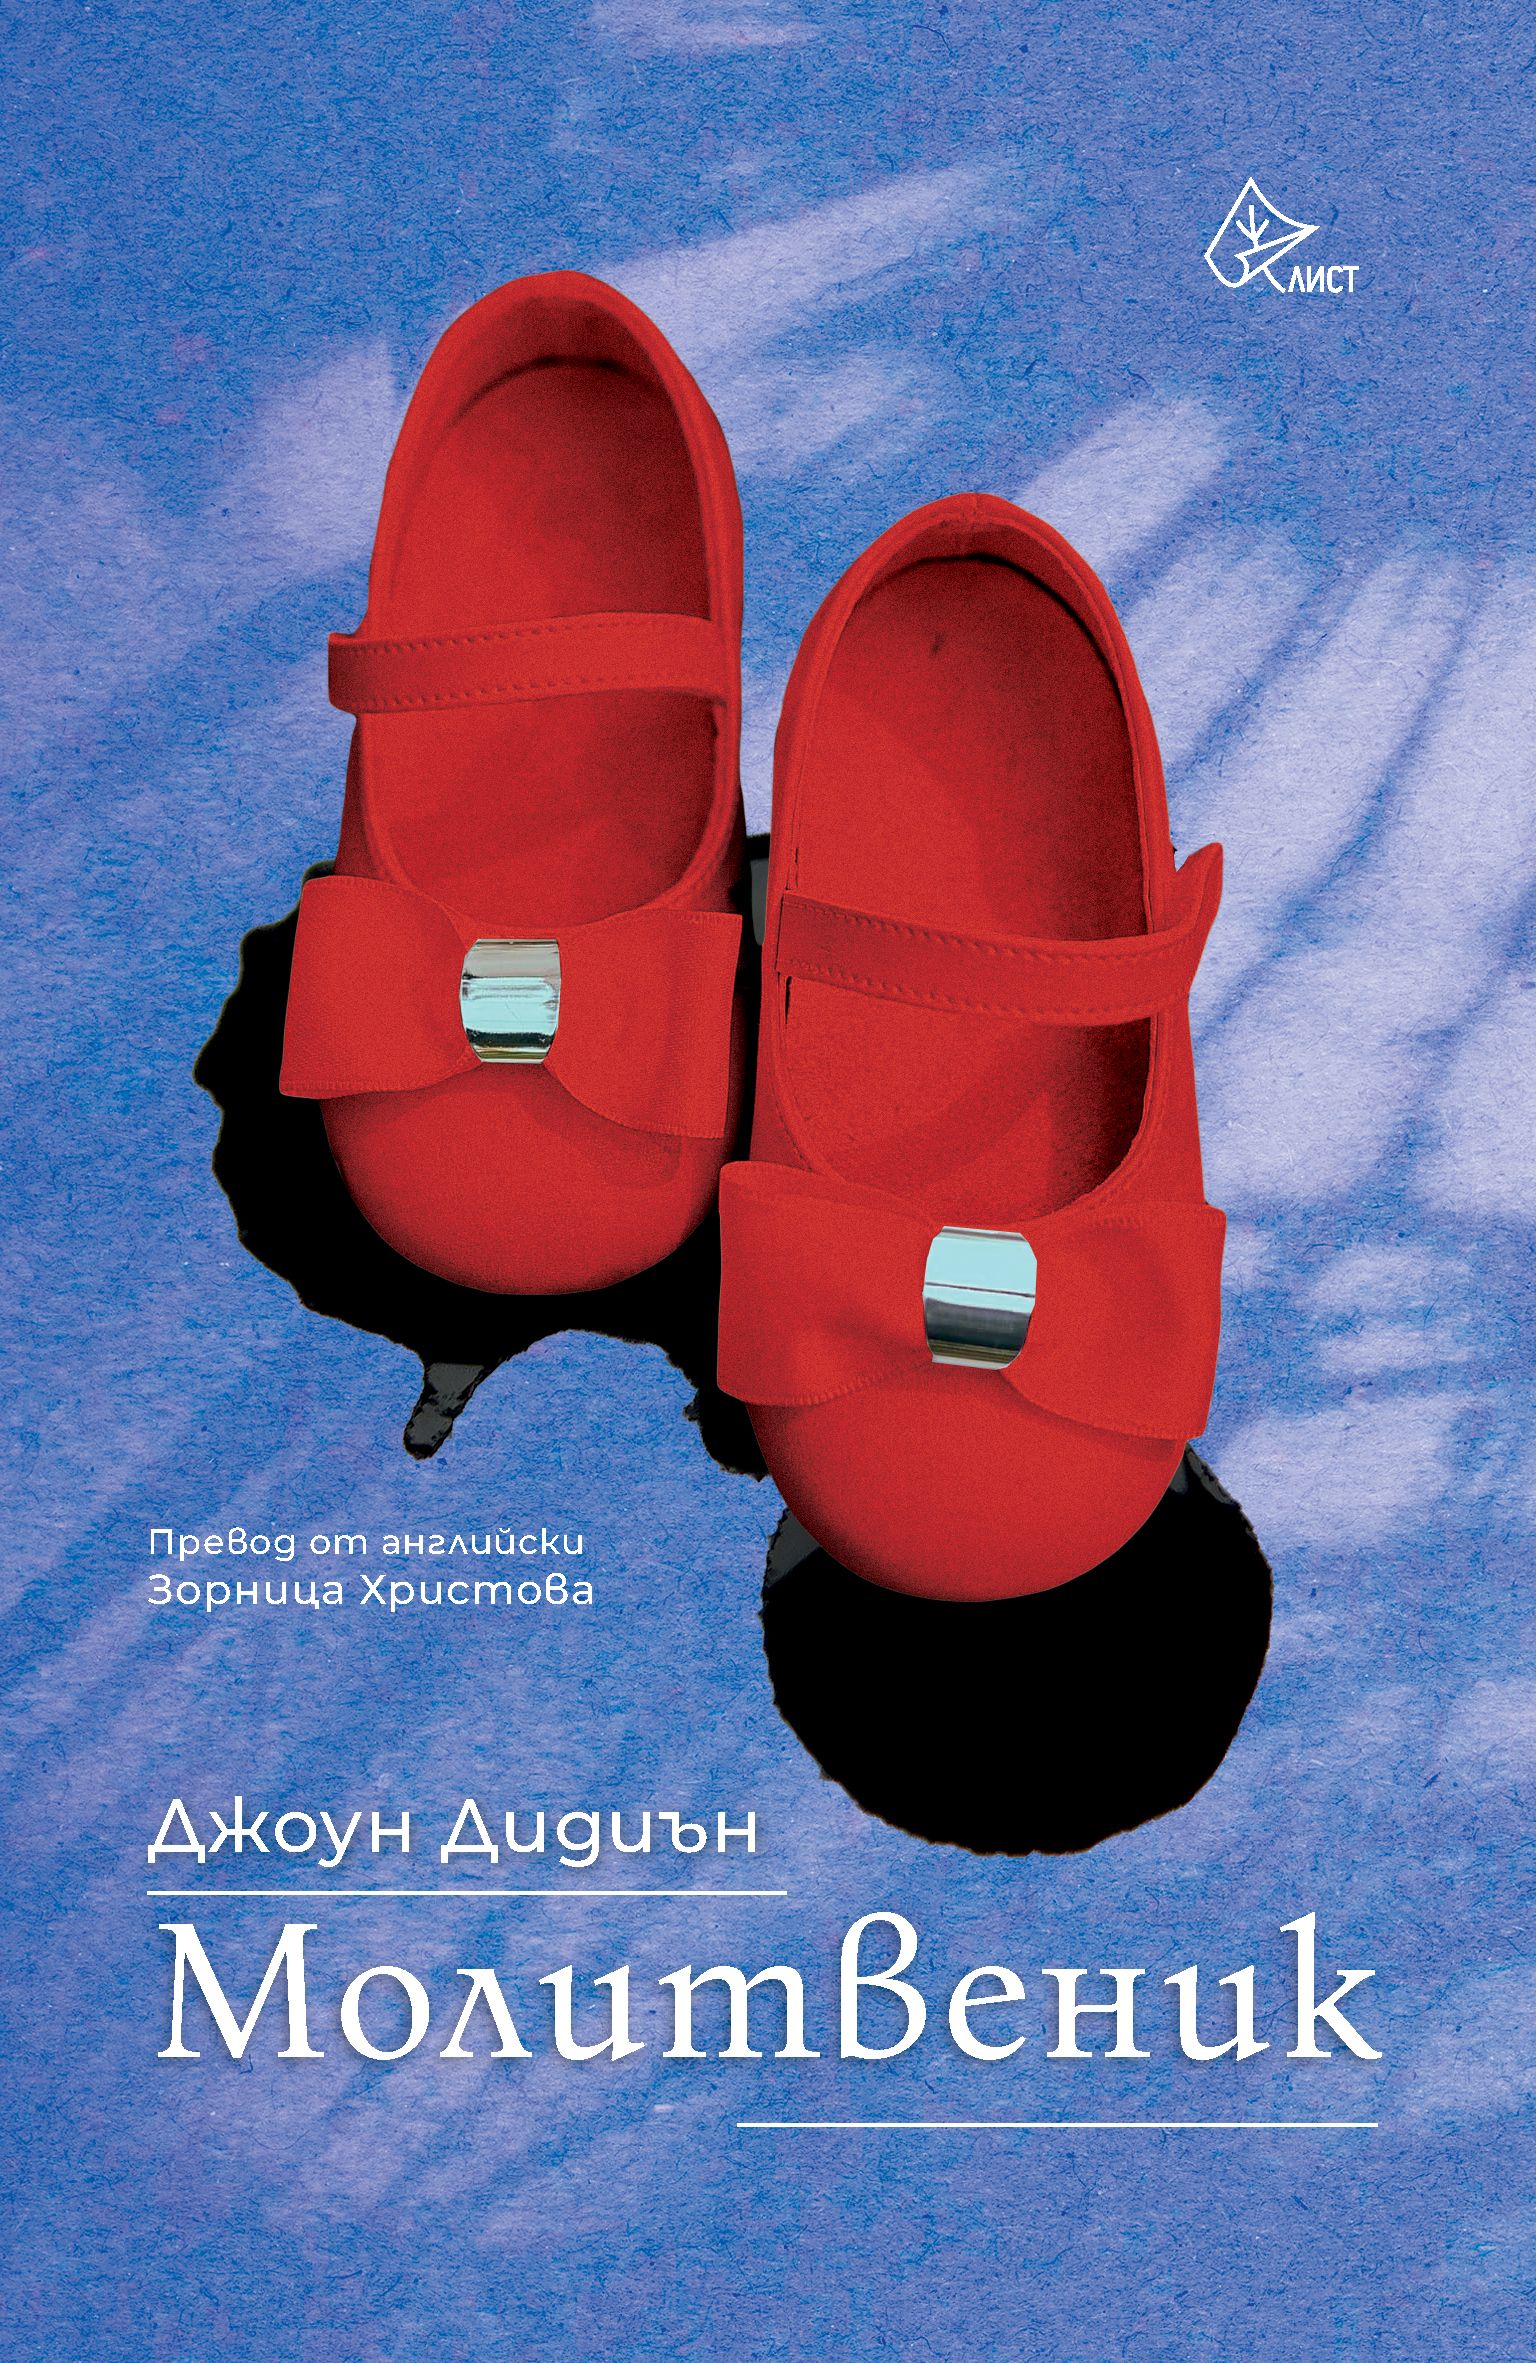 Романът "Молитвеник" на Джоун Дидиън излиза на български